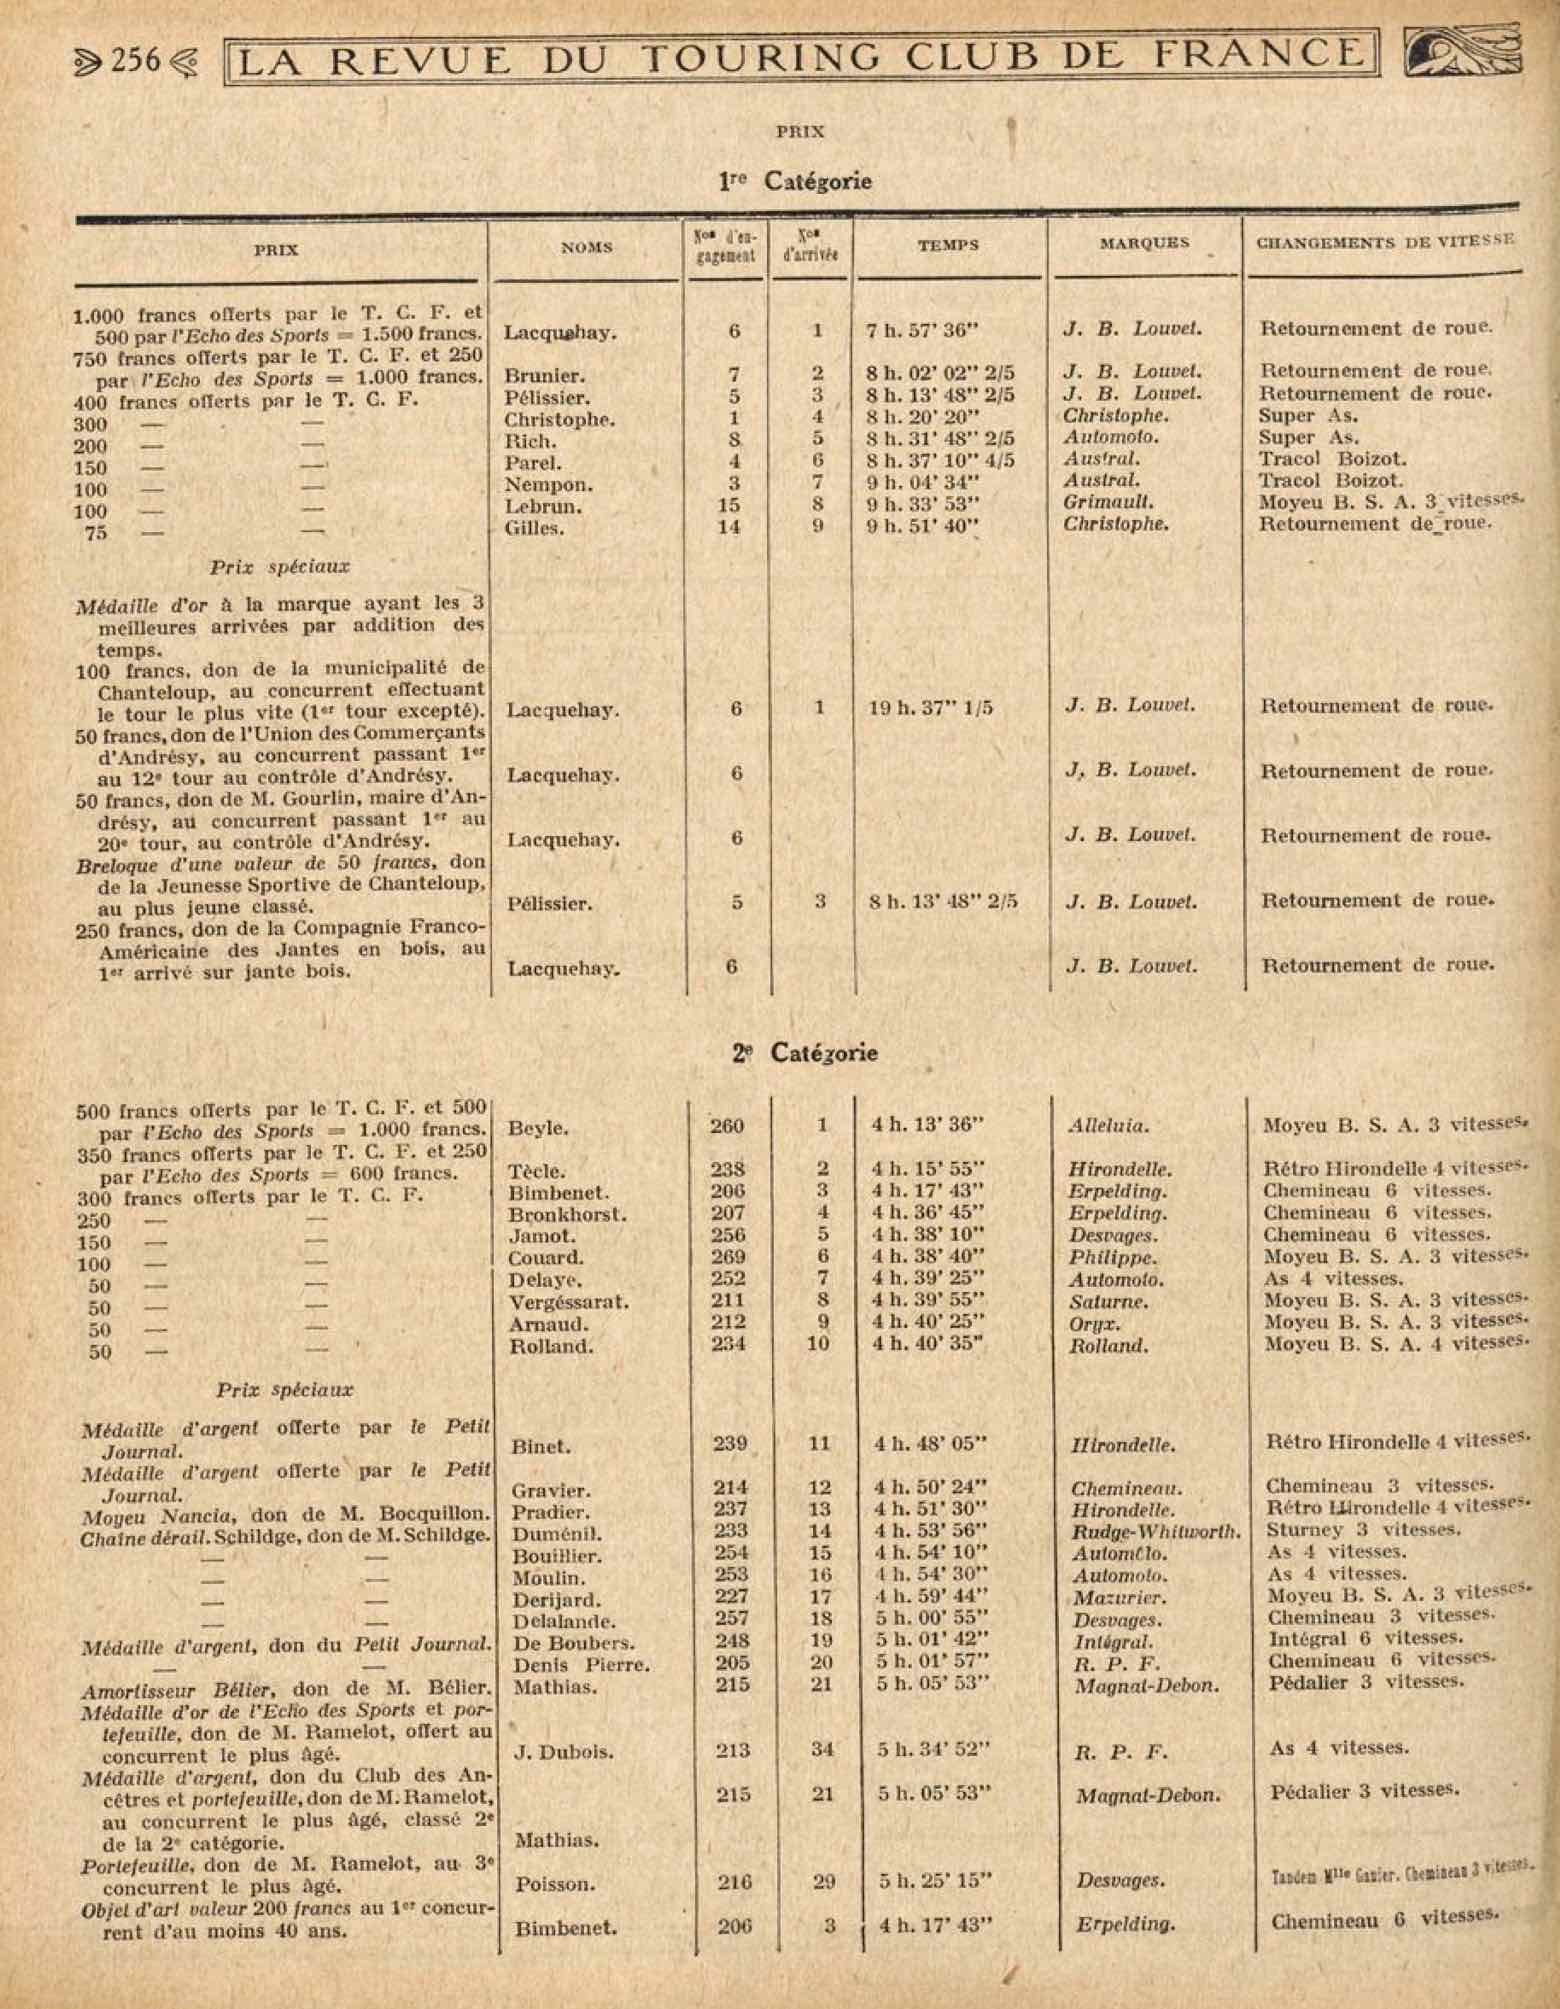 T.C.F. Revue Mensuelle June 1923 - Les resultats du 5e Championnat de la Bicyclette polymultipliee scan 2 main image